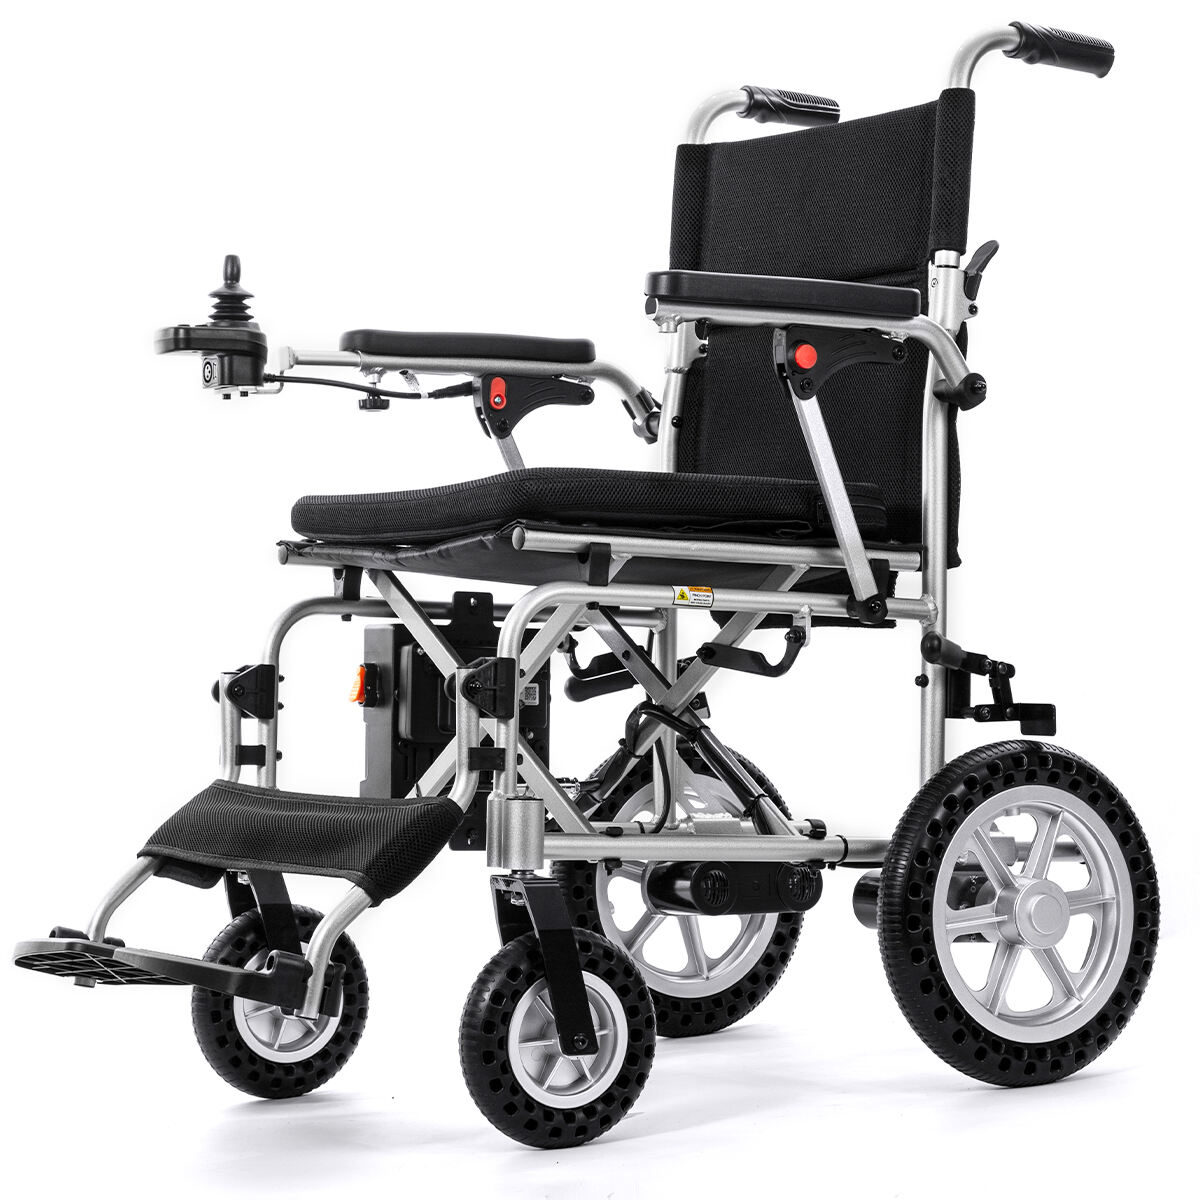 BC-EALD4 Xe lăn điện nhẹ dành cho người khuyết tật